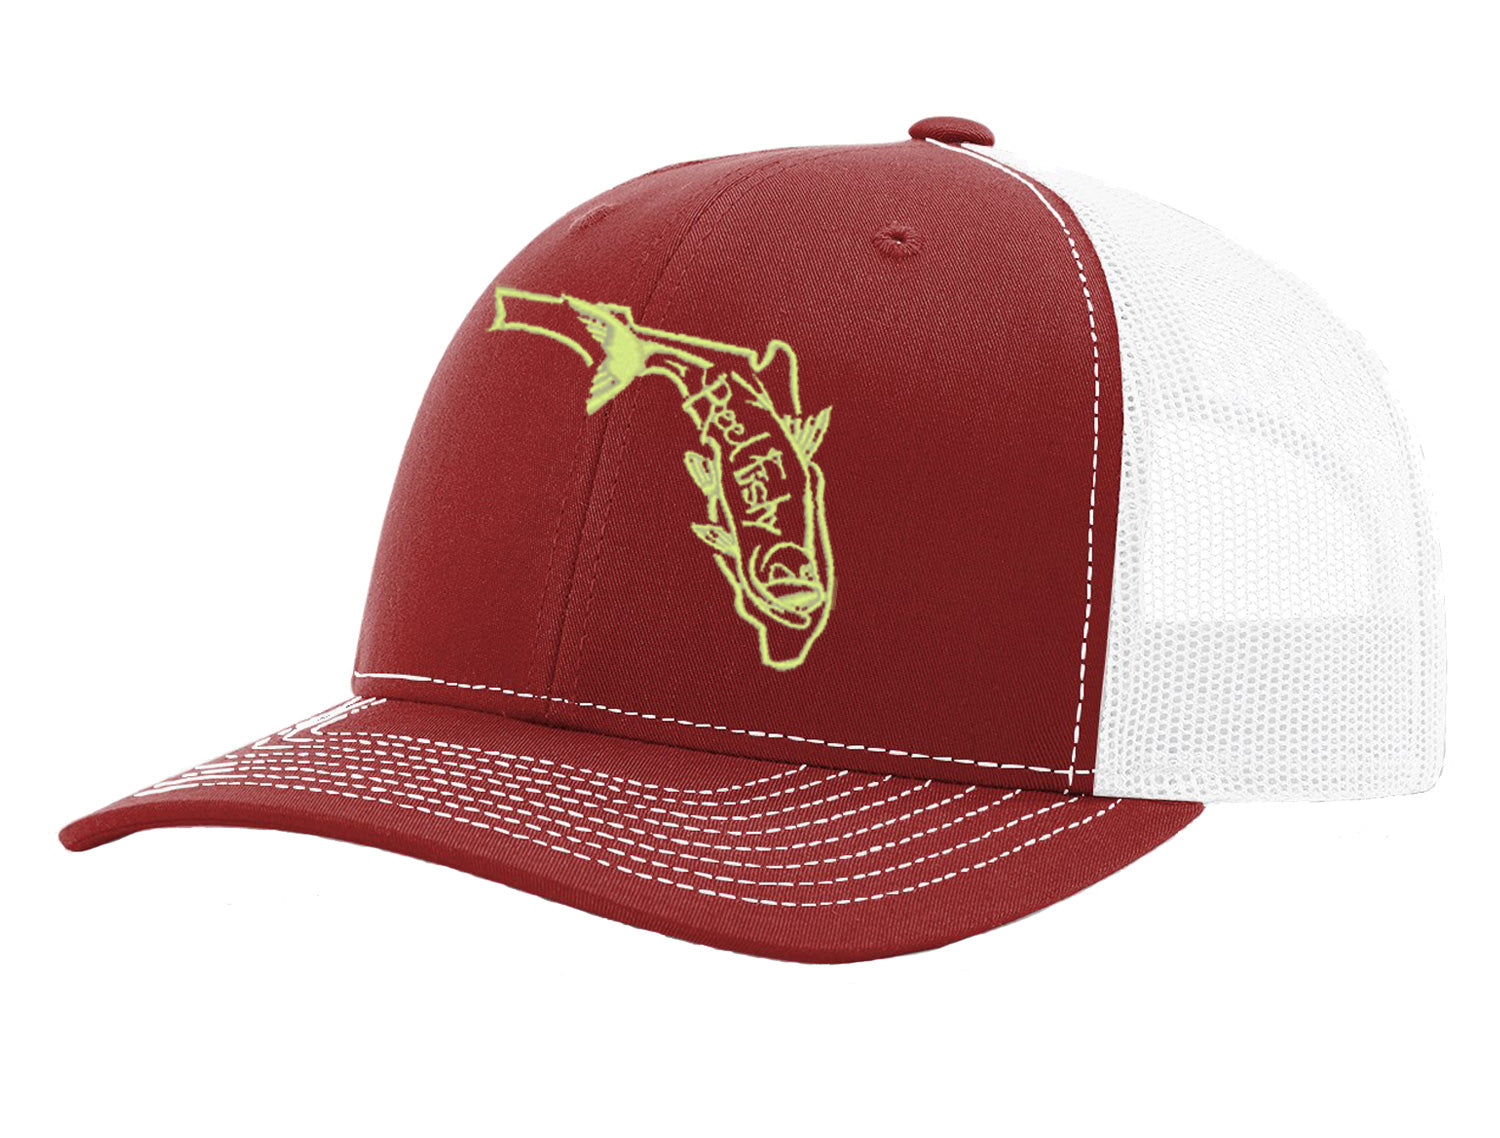 Tarpon Fishing Trucker Hat, Florida Logo Snapback Trucker Cap, Fishing Hat Garnet W/Gold Logo